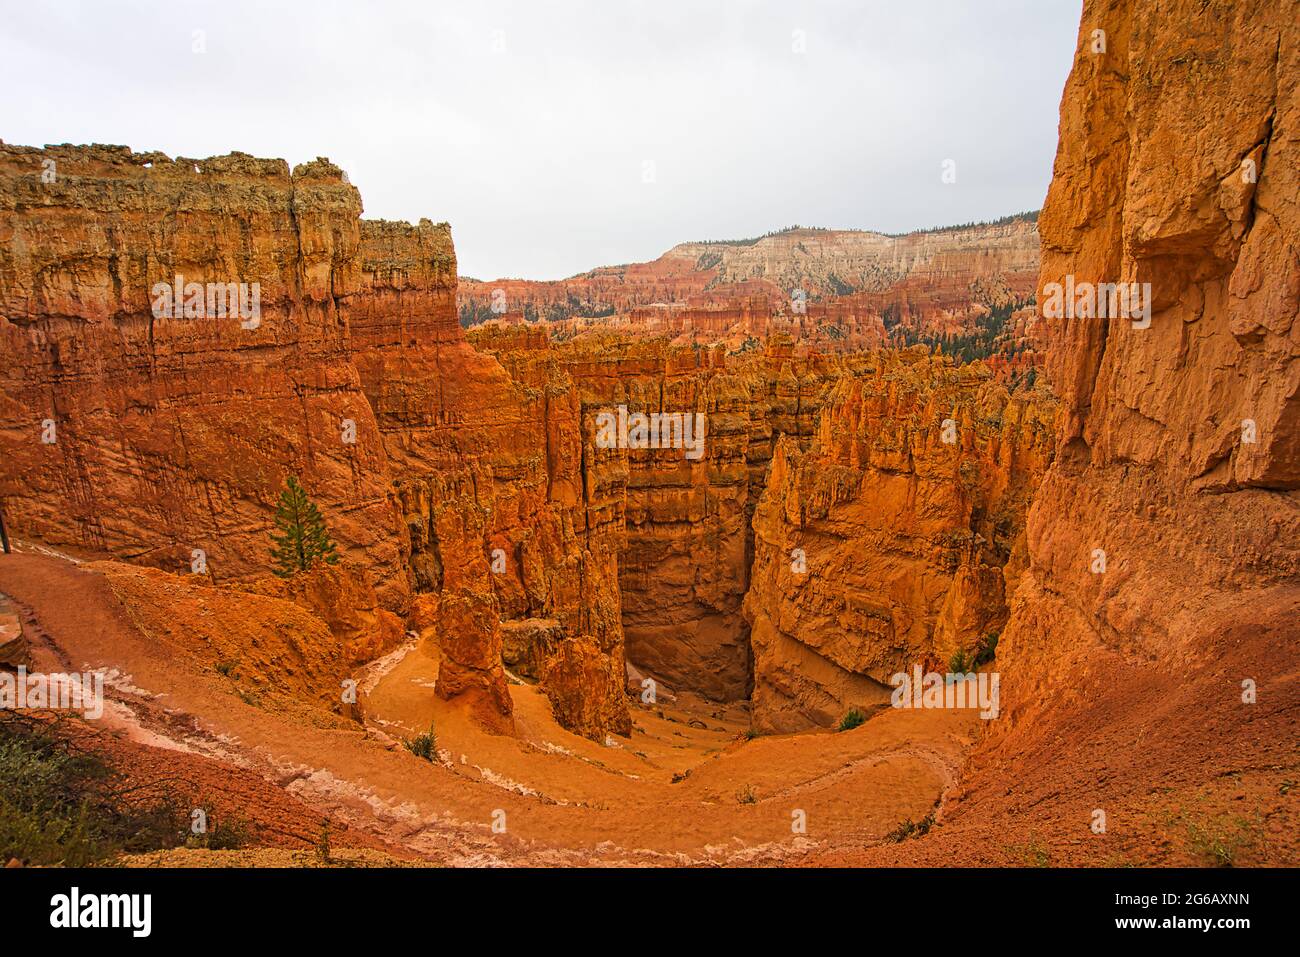 Der Zion National Park umfasst Berge, Flüsse, Schluchten und natürliche Bögen. Die Wände der Schlucht sind rötlich-bräunlicher Navajo-Sandstein. Utah, USA. Stockfoto